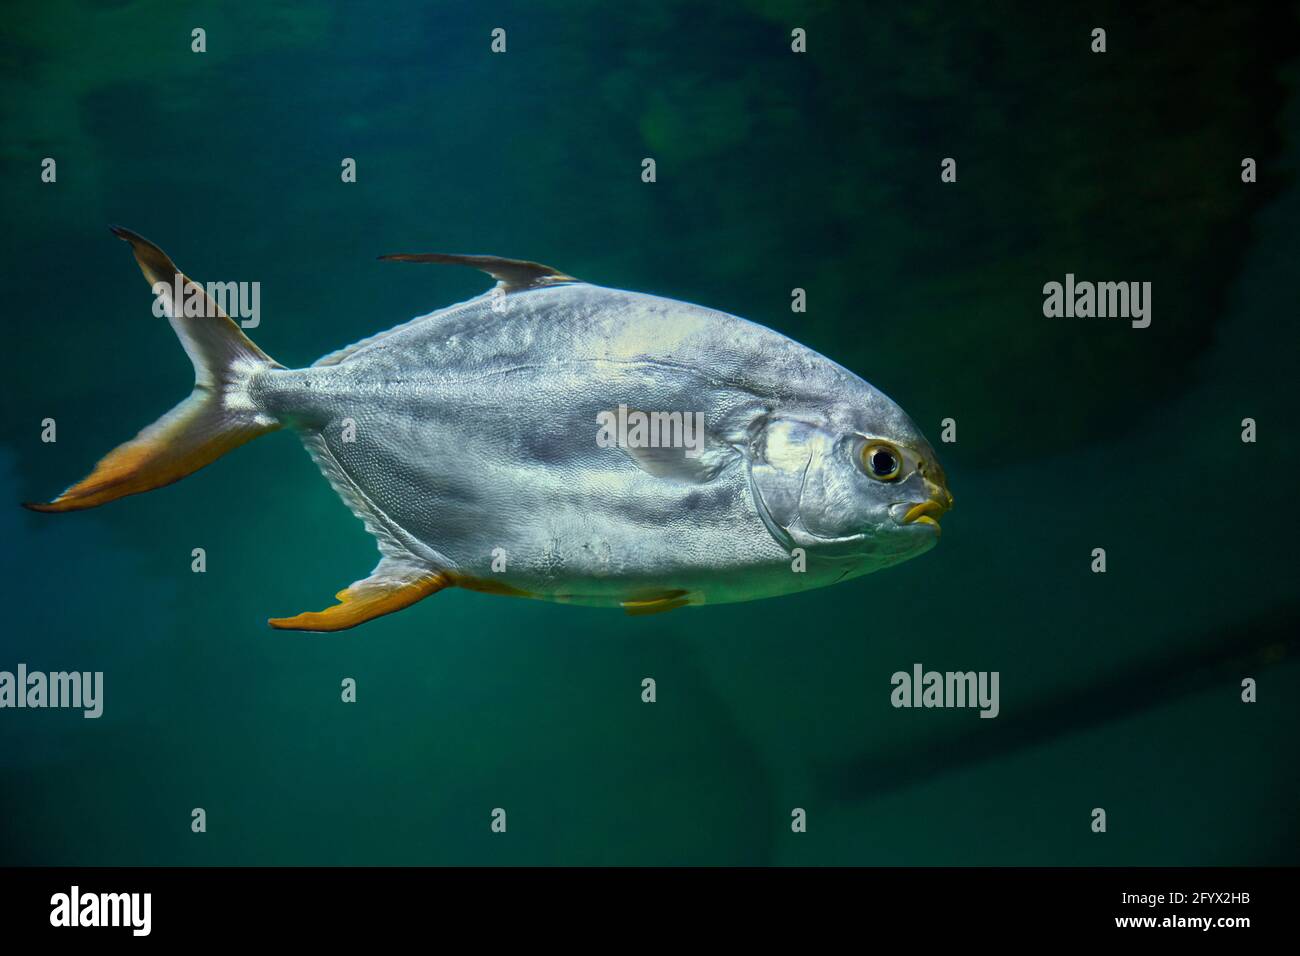 Snubnose pompano (Trachinotus blochii) swims in aquarium. Stock Photo